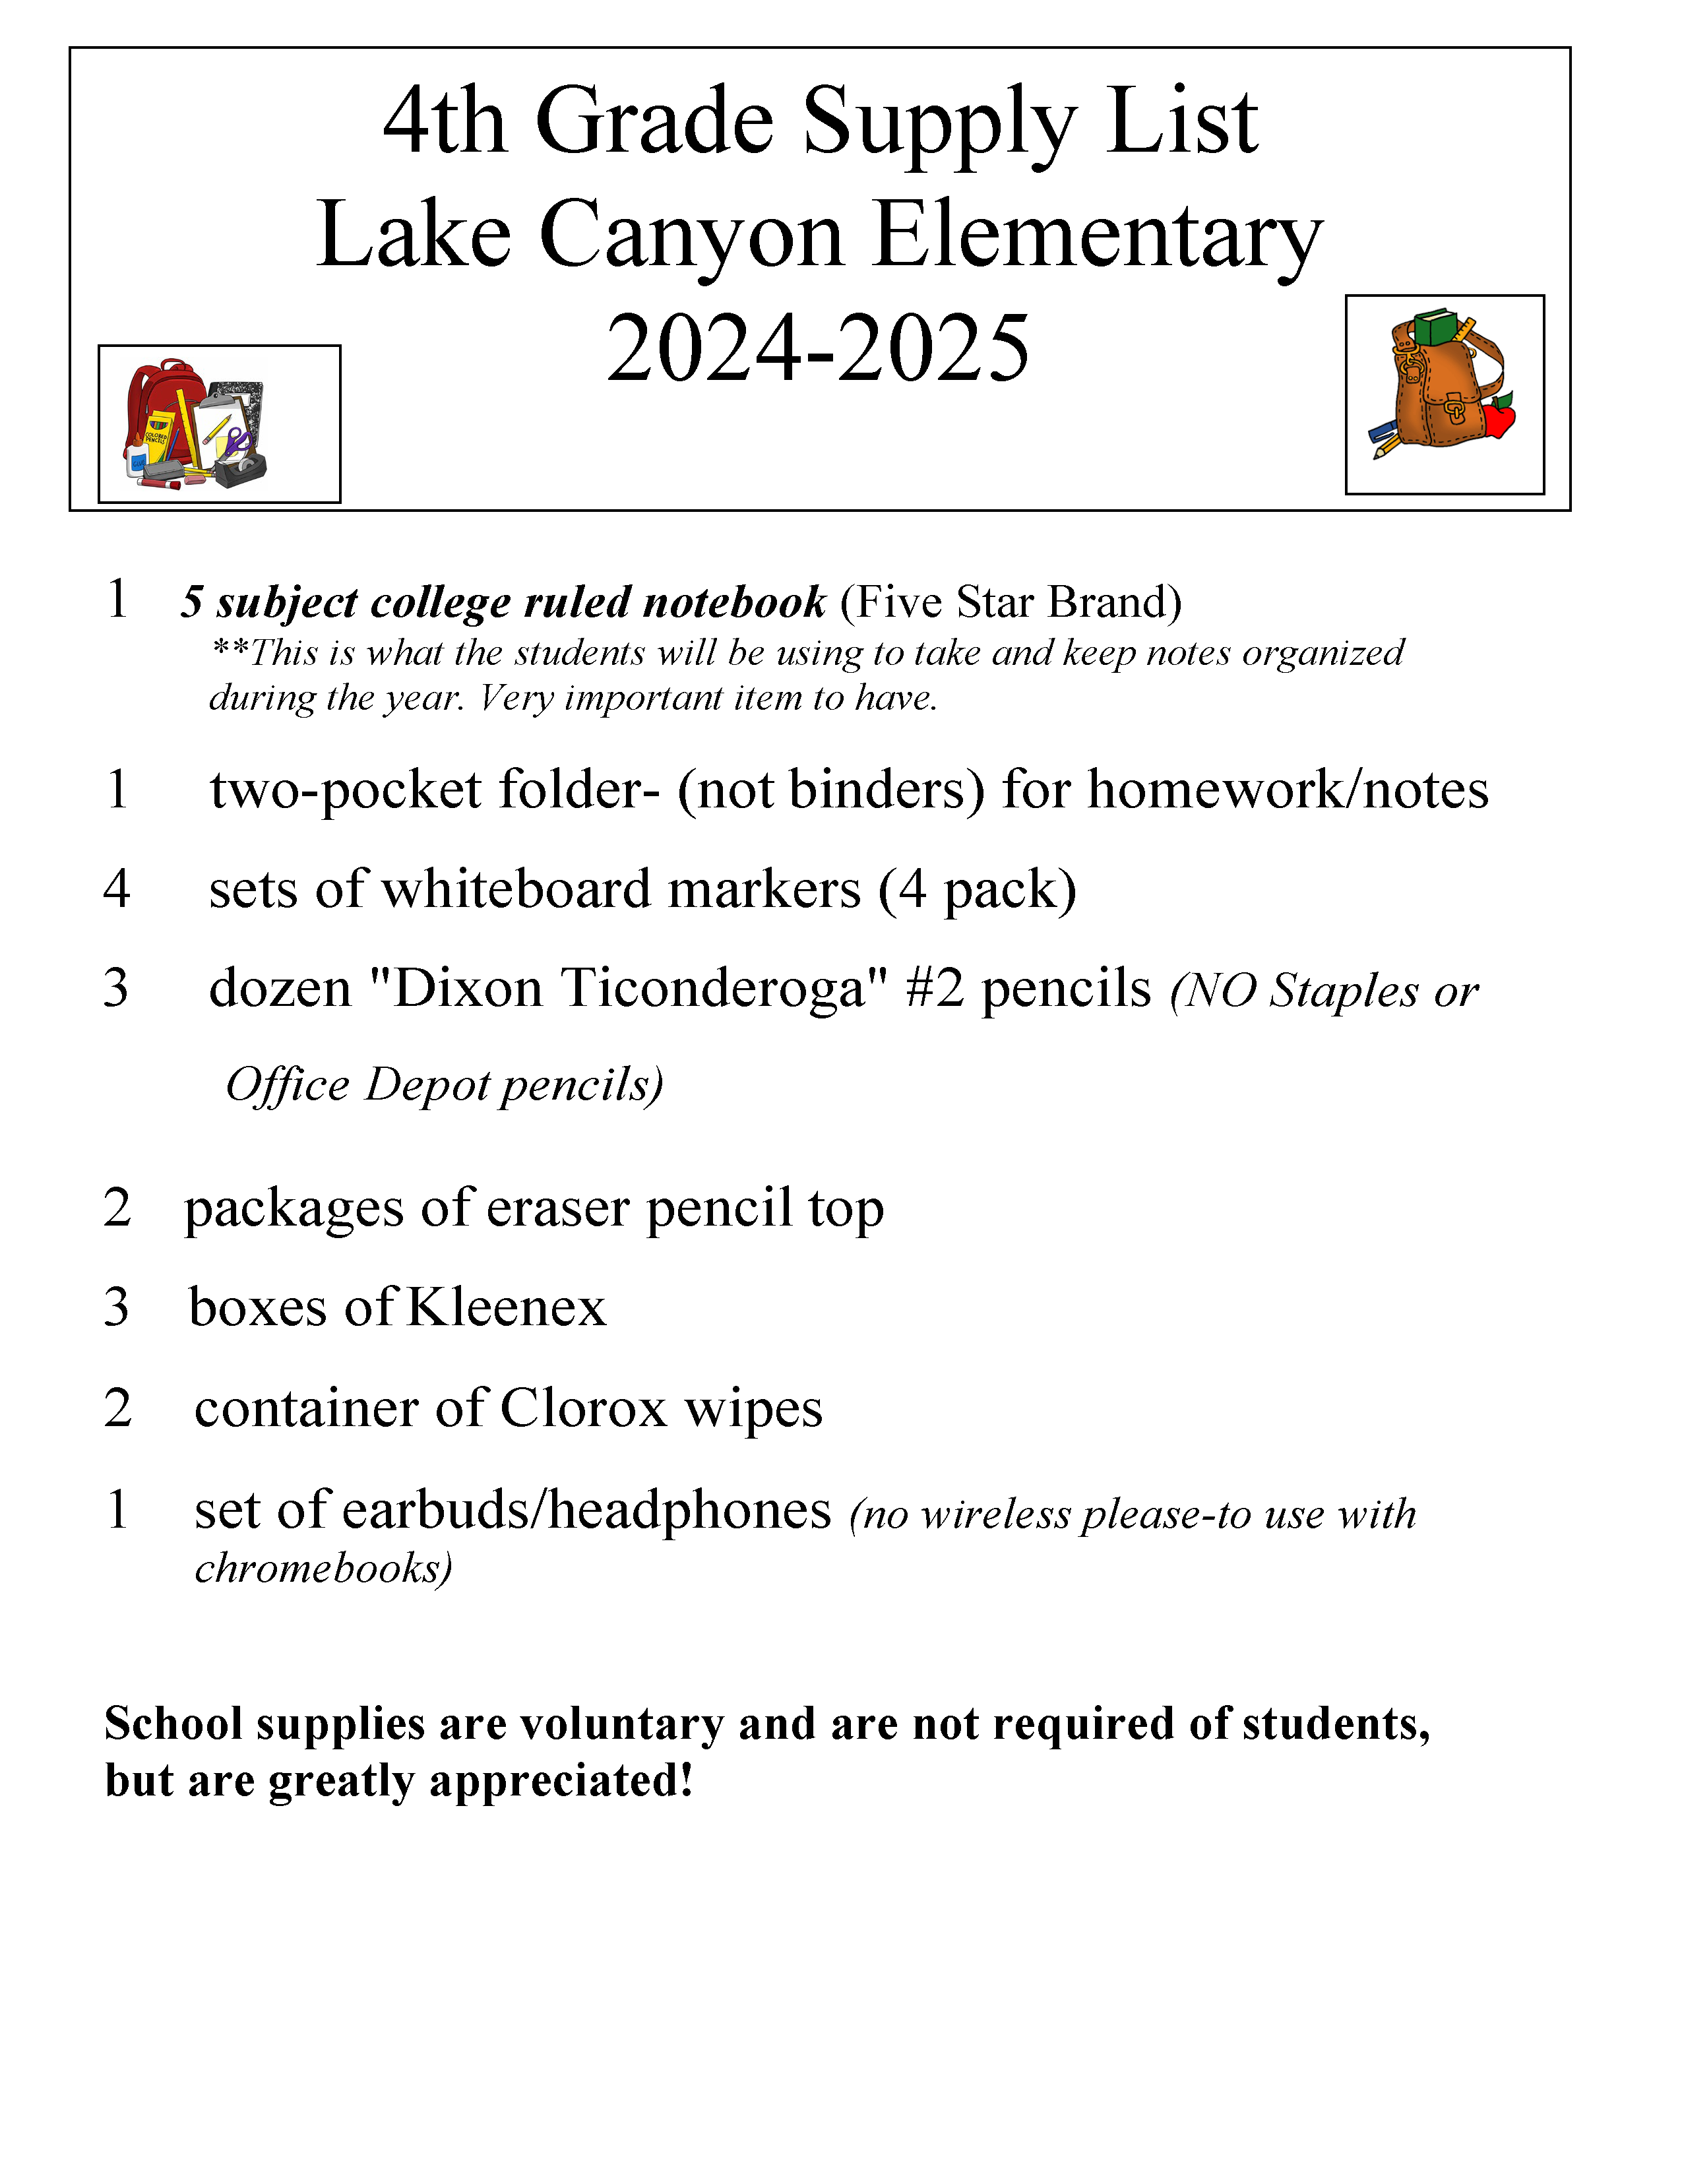 4th Grade Materials list